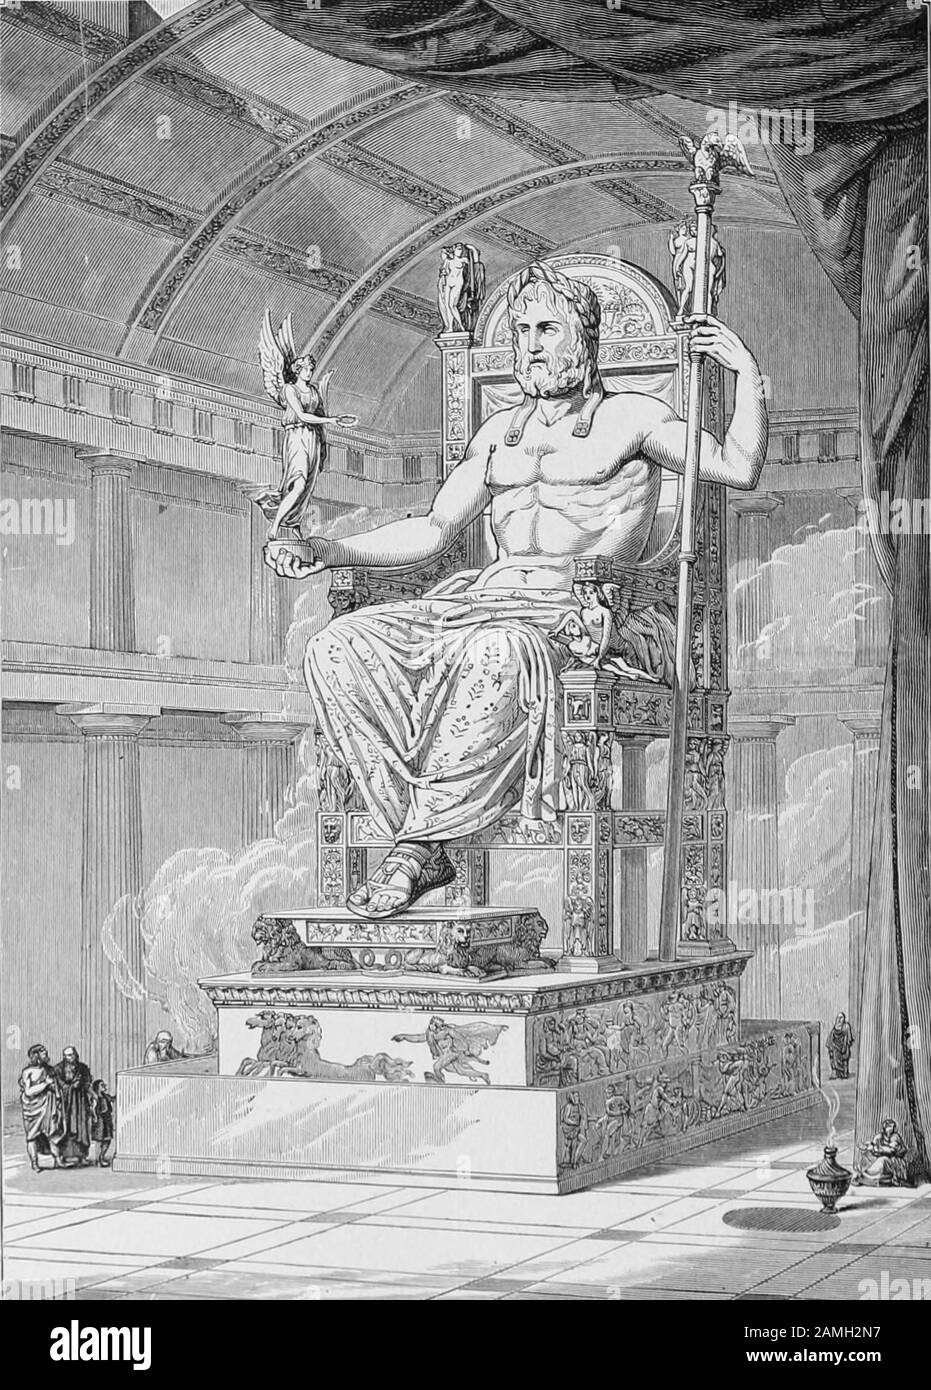 Abbildung einer Statue des griechischen gottes Zeus aus dem Buch "Mit dem Volk der Welt" des Autors John Clark Ridpath, herausgegeben von C. E, 1915. Ridpath. Kostenloses Internetarchiv. () Stockfoto